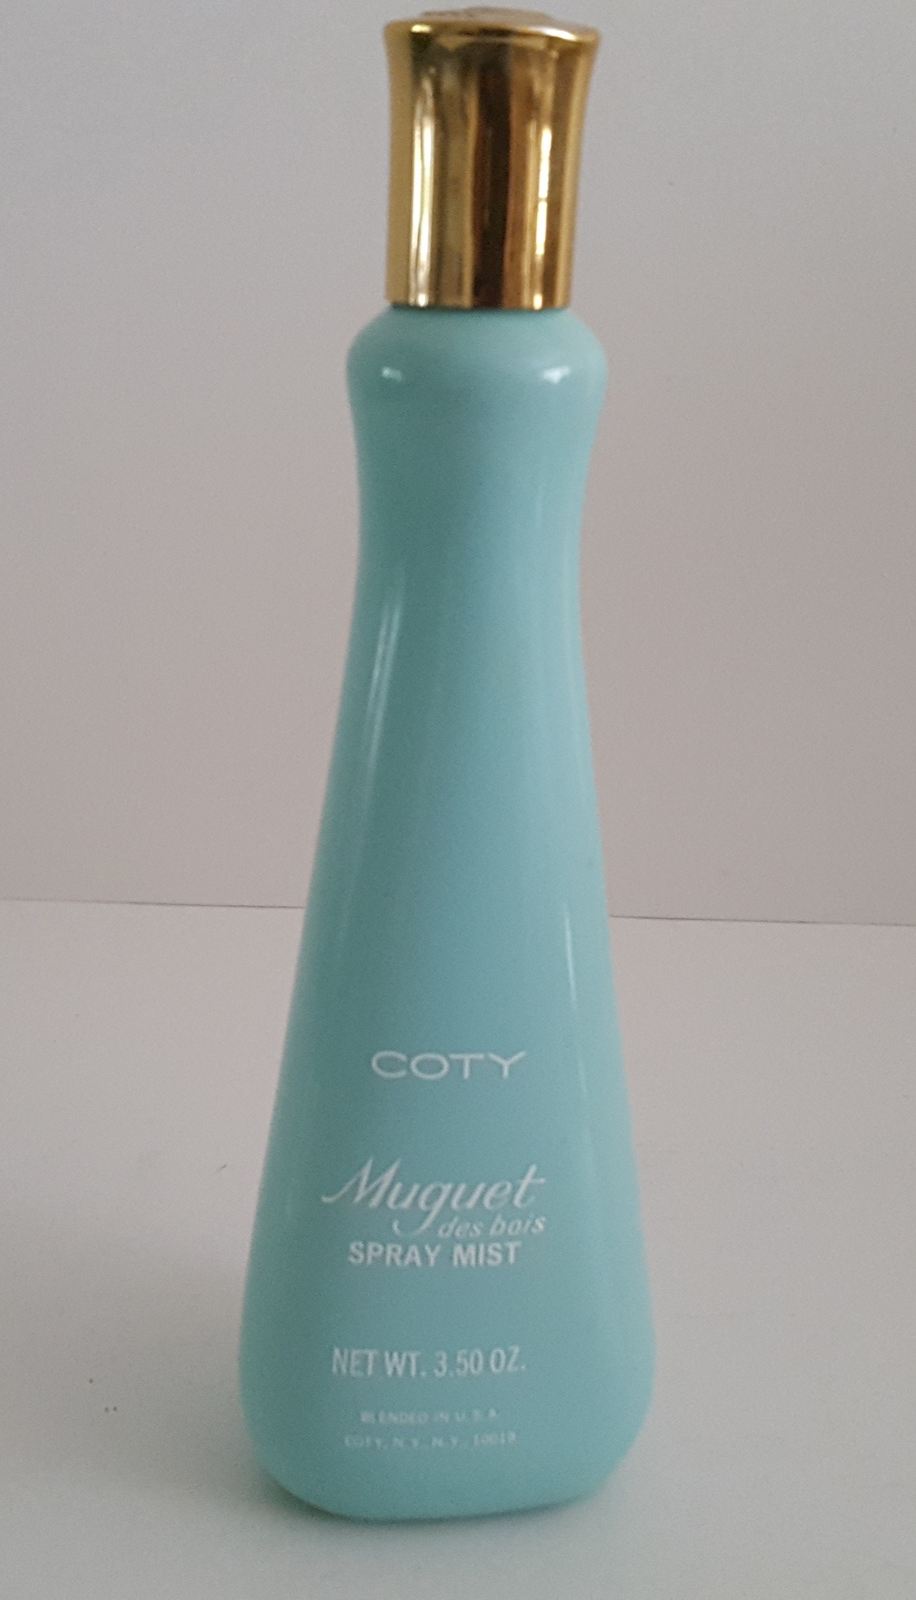 Vintage Coty Muguet des bois Spray Mist Fragrance 3.50oz - $40.95